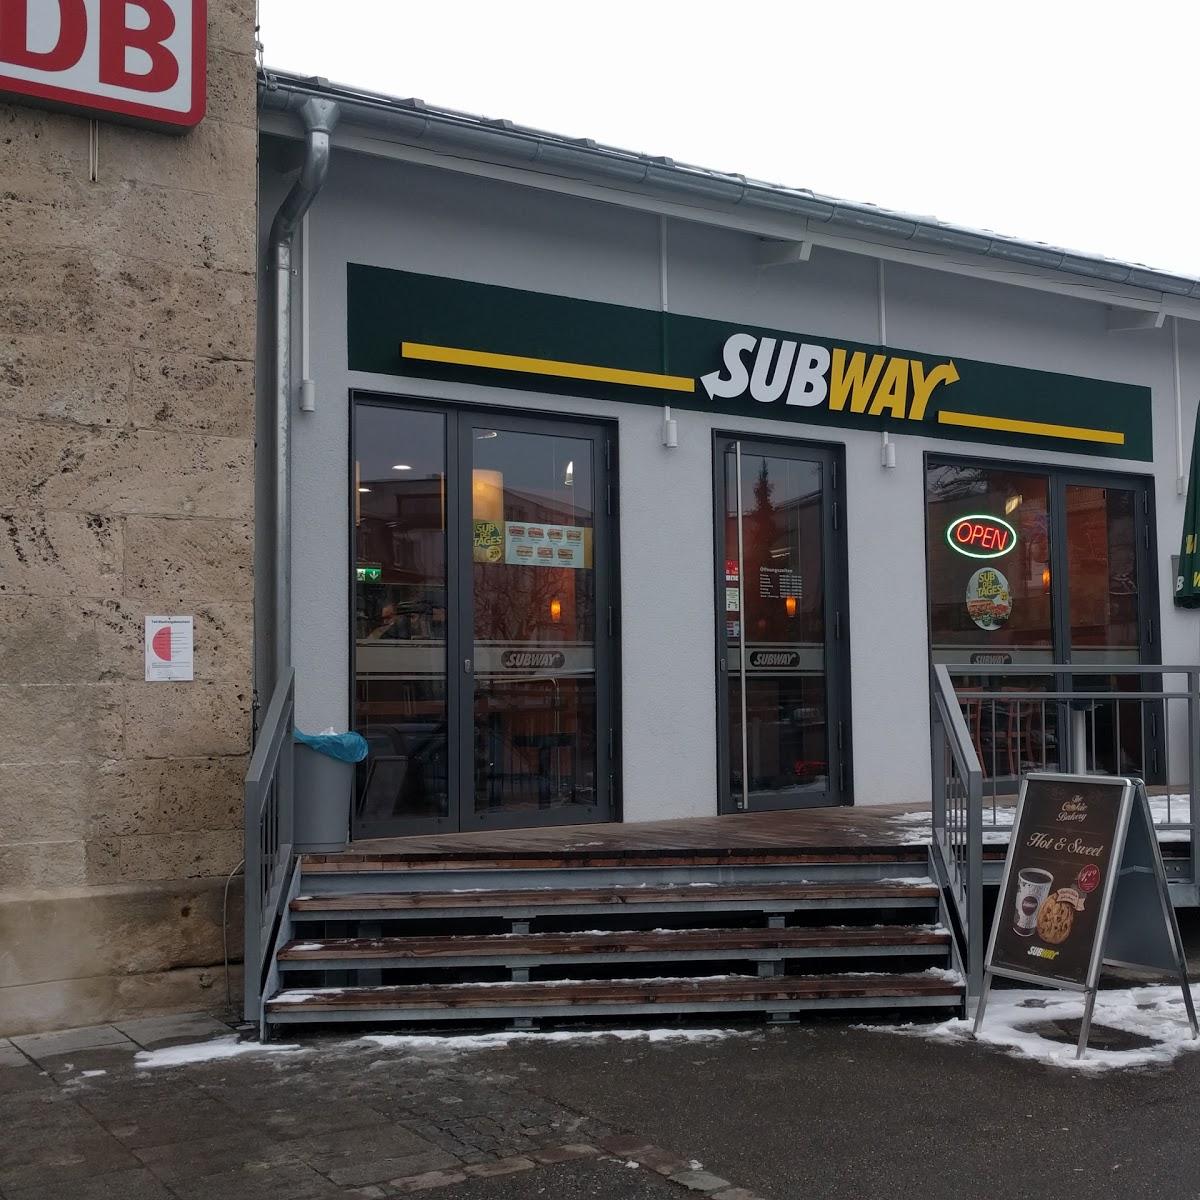 Restaurant "Subway" in Metzingen